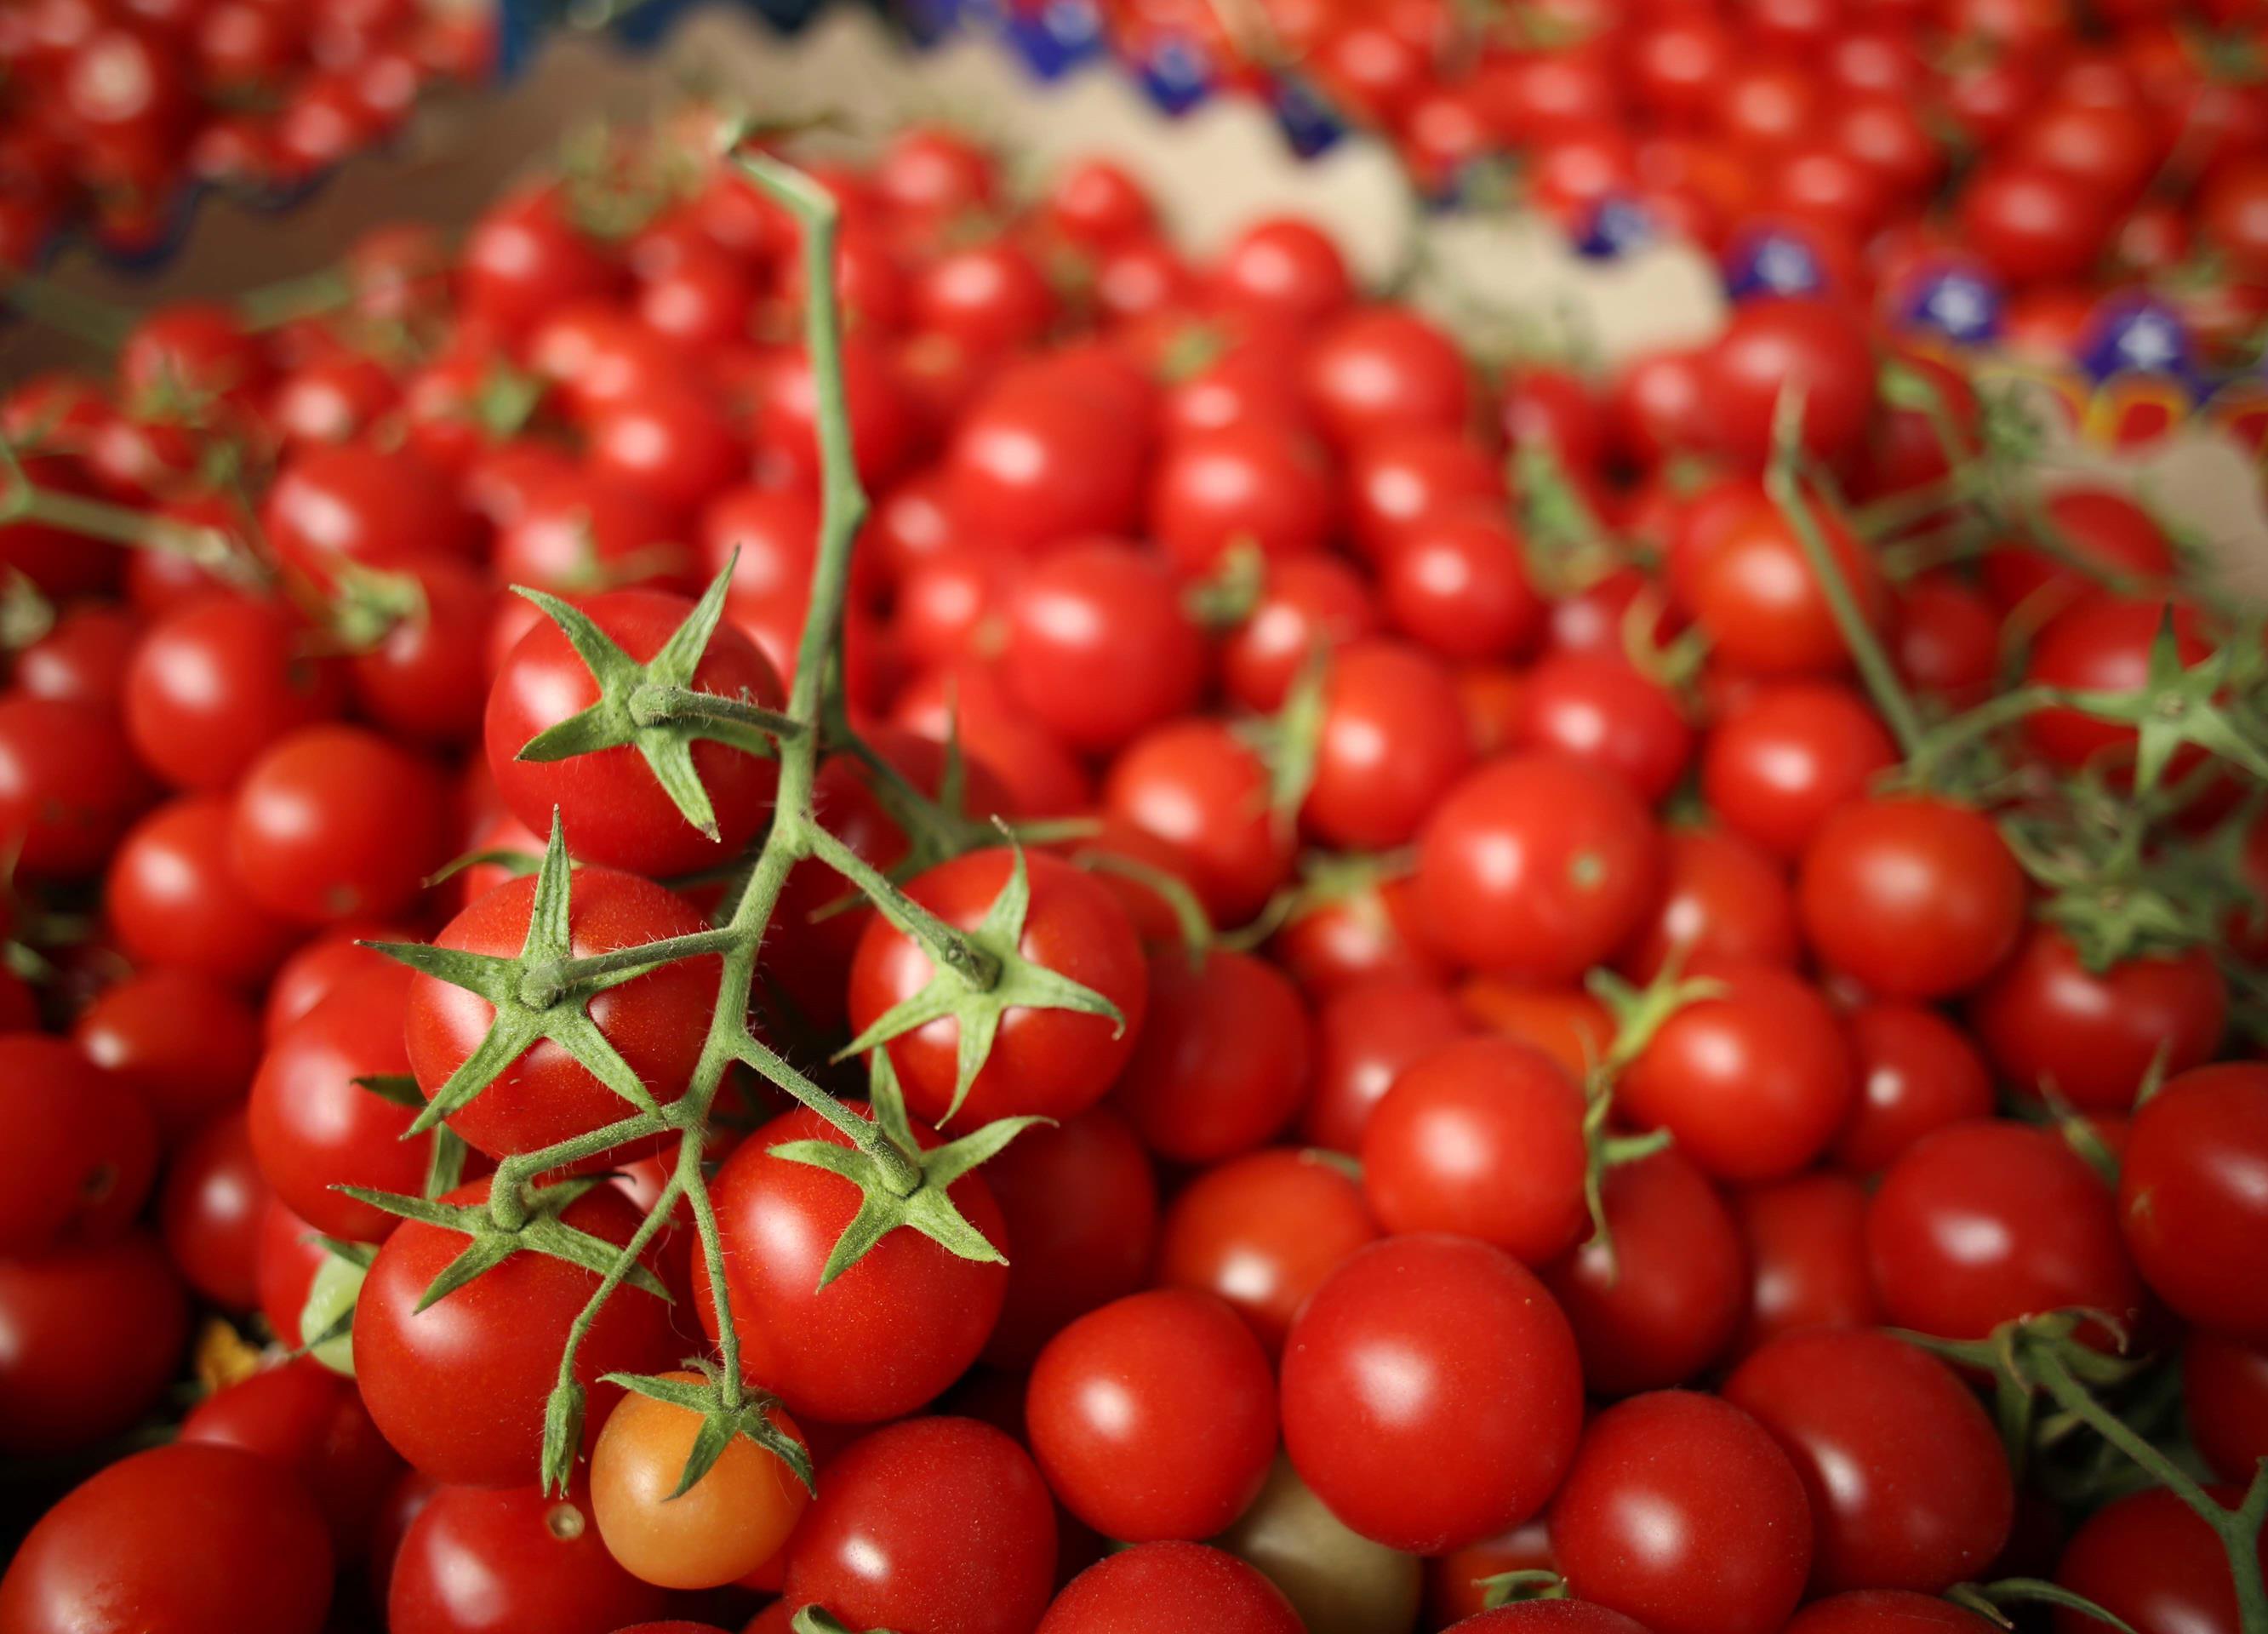 52 bin tonla domates birinci